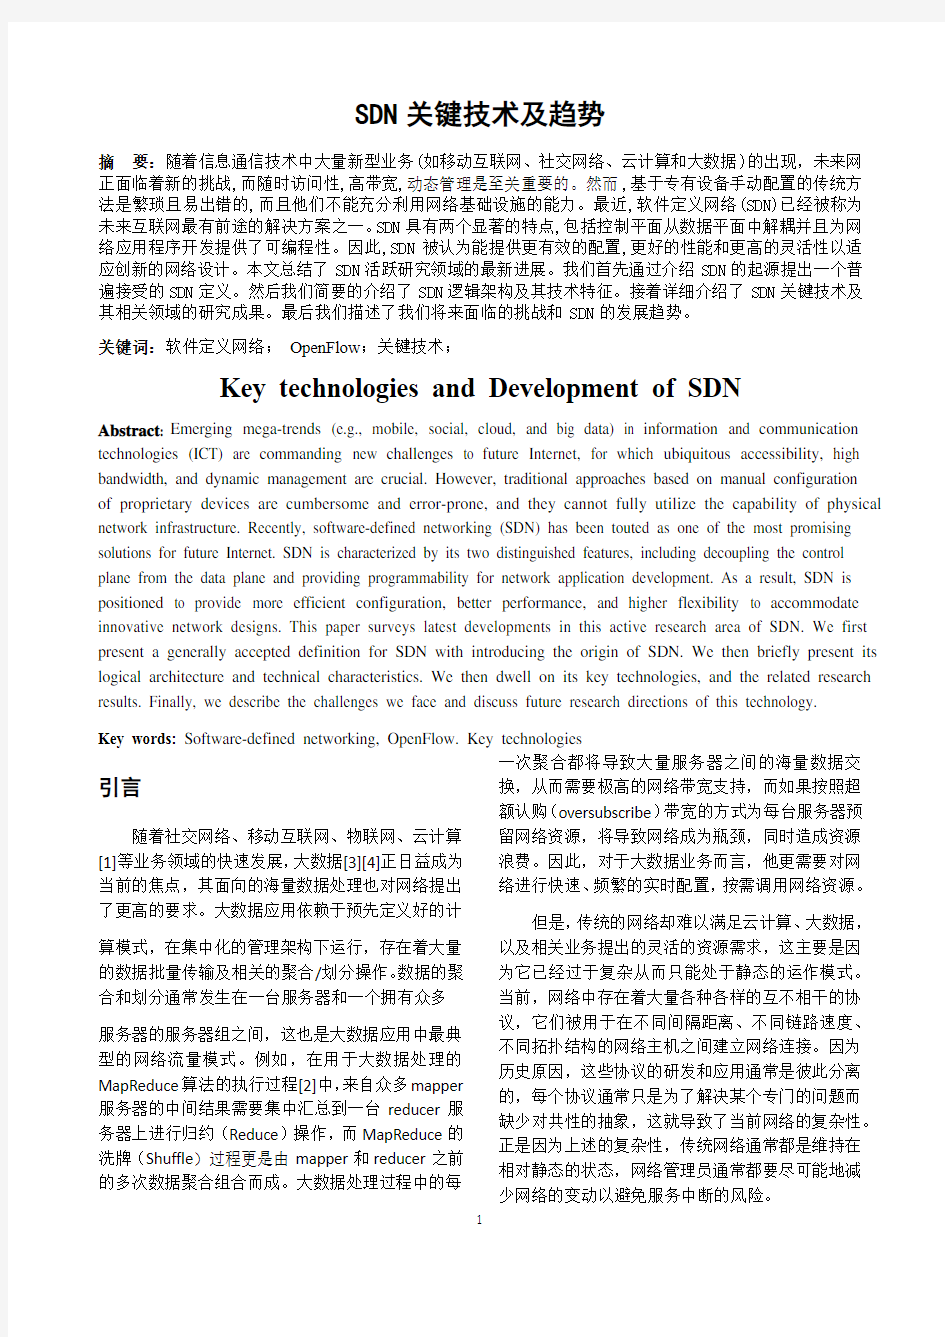 SDN关键技术_综述